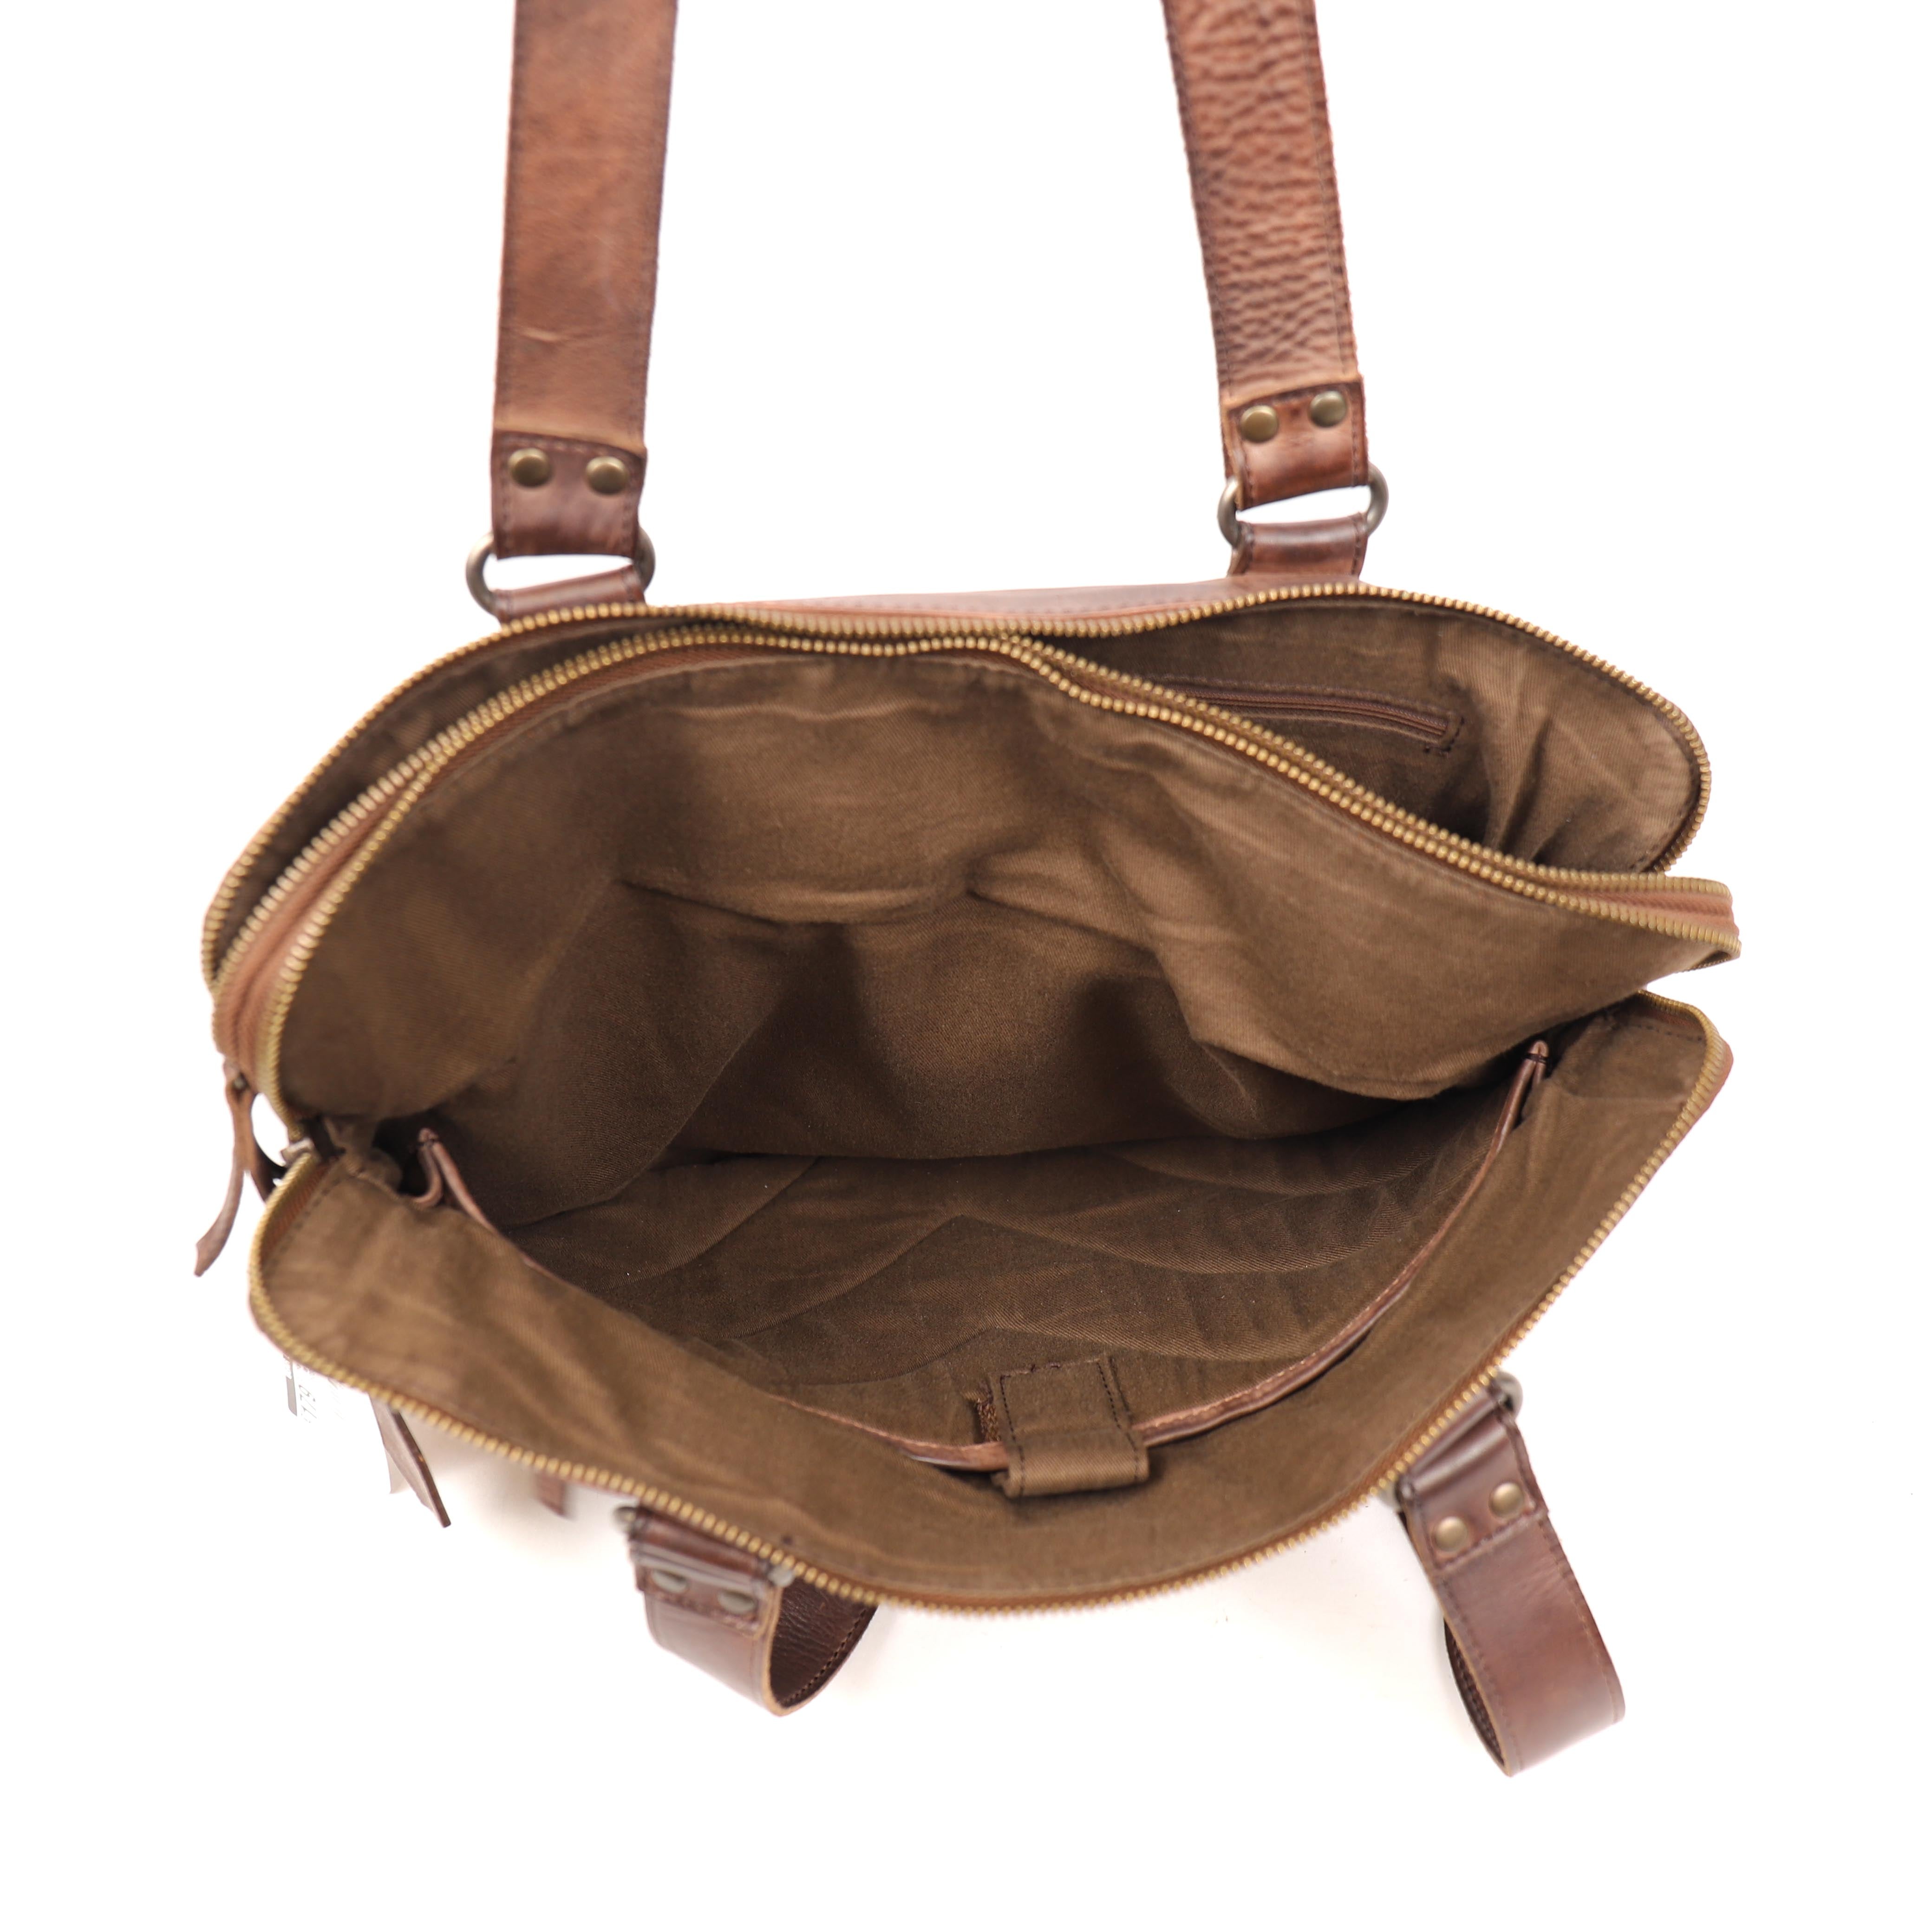 Hand/shoulder bag 'Lia' dark brown - CL 35220